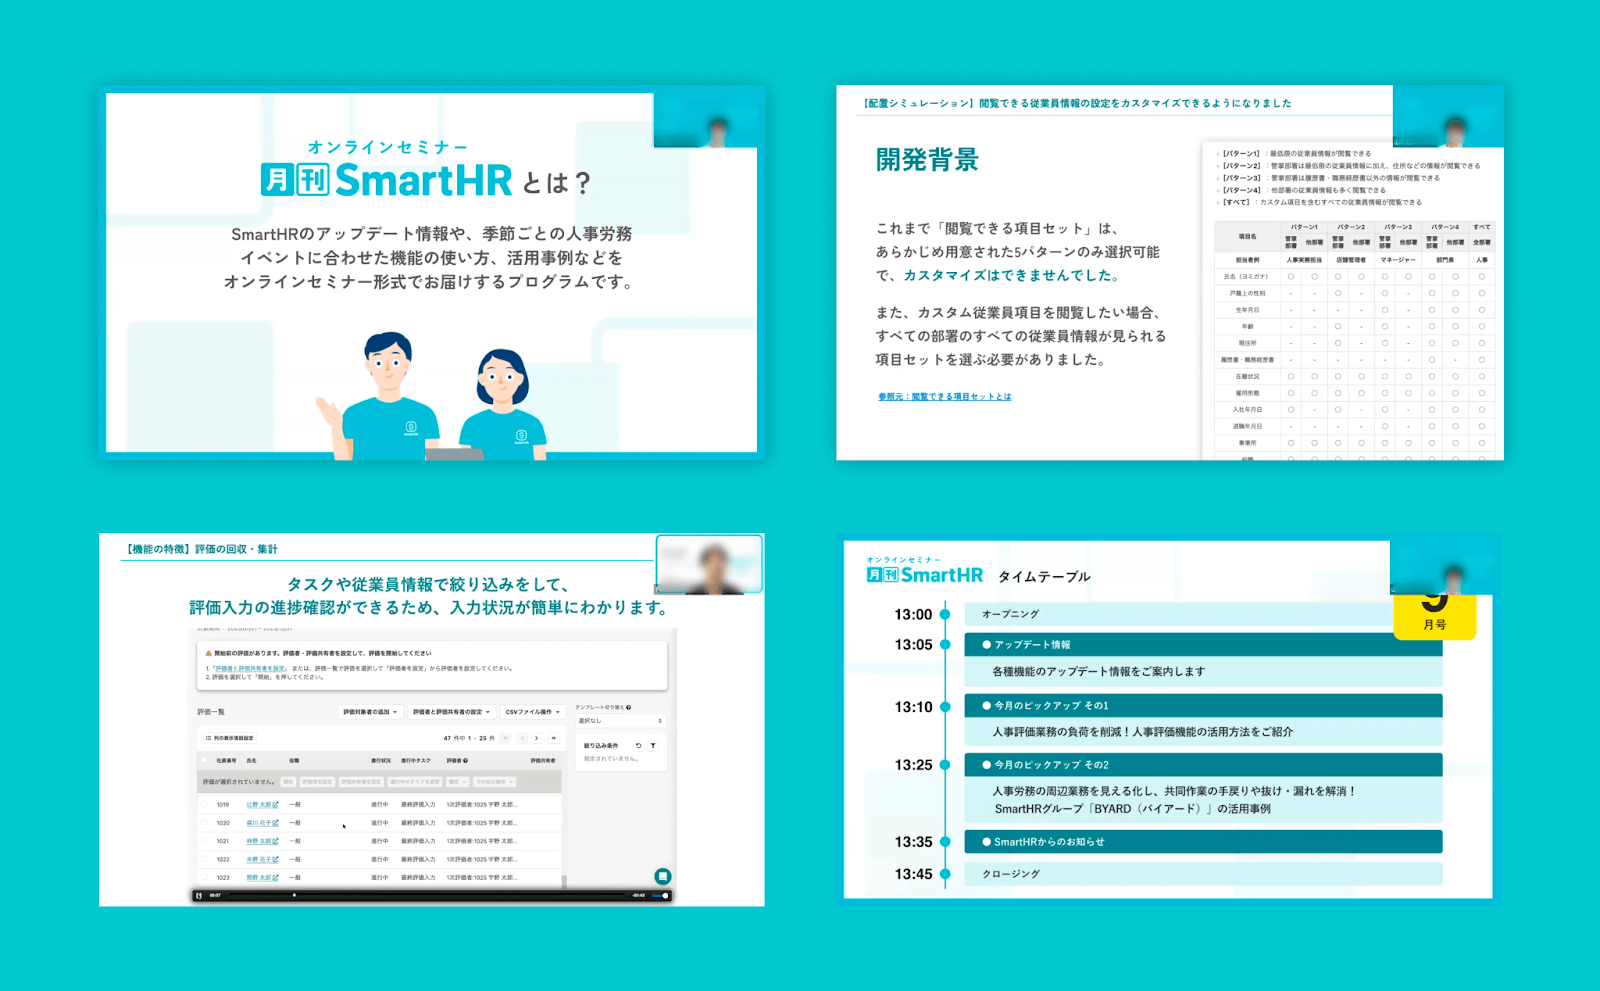 月刊SmartHRのスライドが4枚掲載されている。月刊SmartHRの説明スライドから、機能の説明スライド、セミナーのタイムテーブルのスライドなどが並べられている。